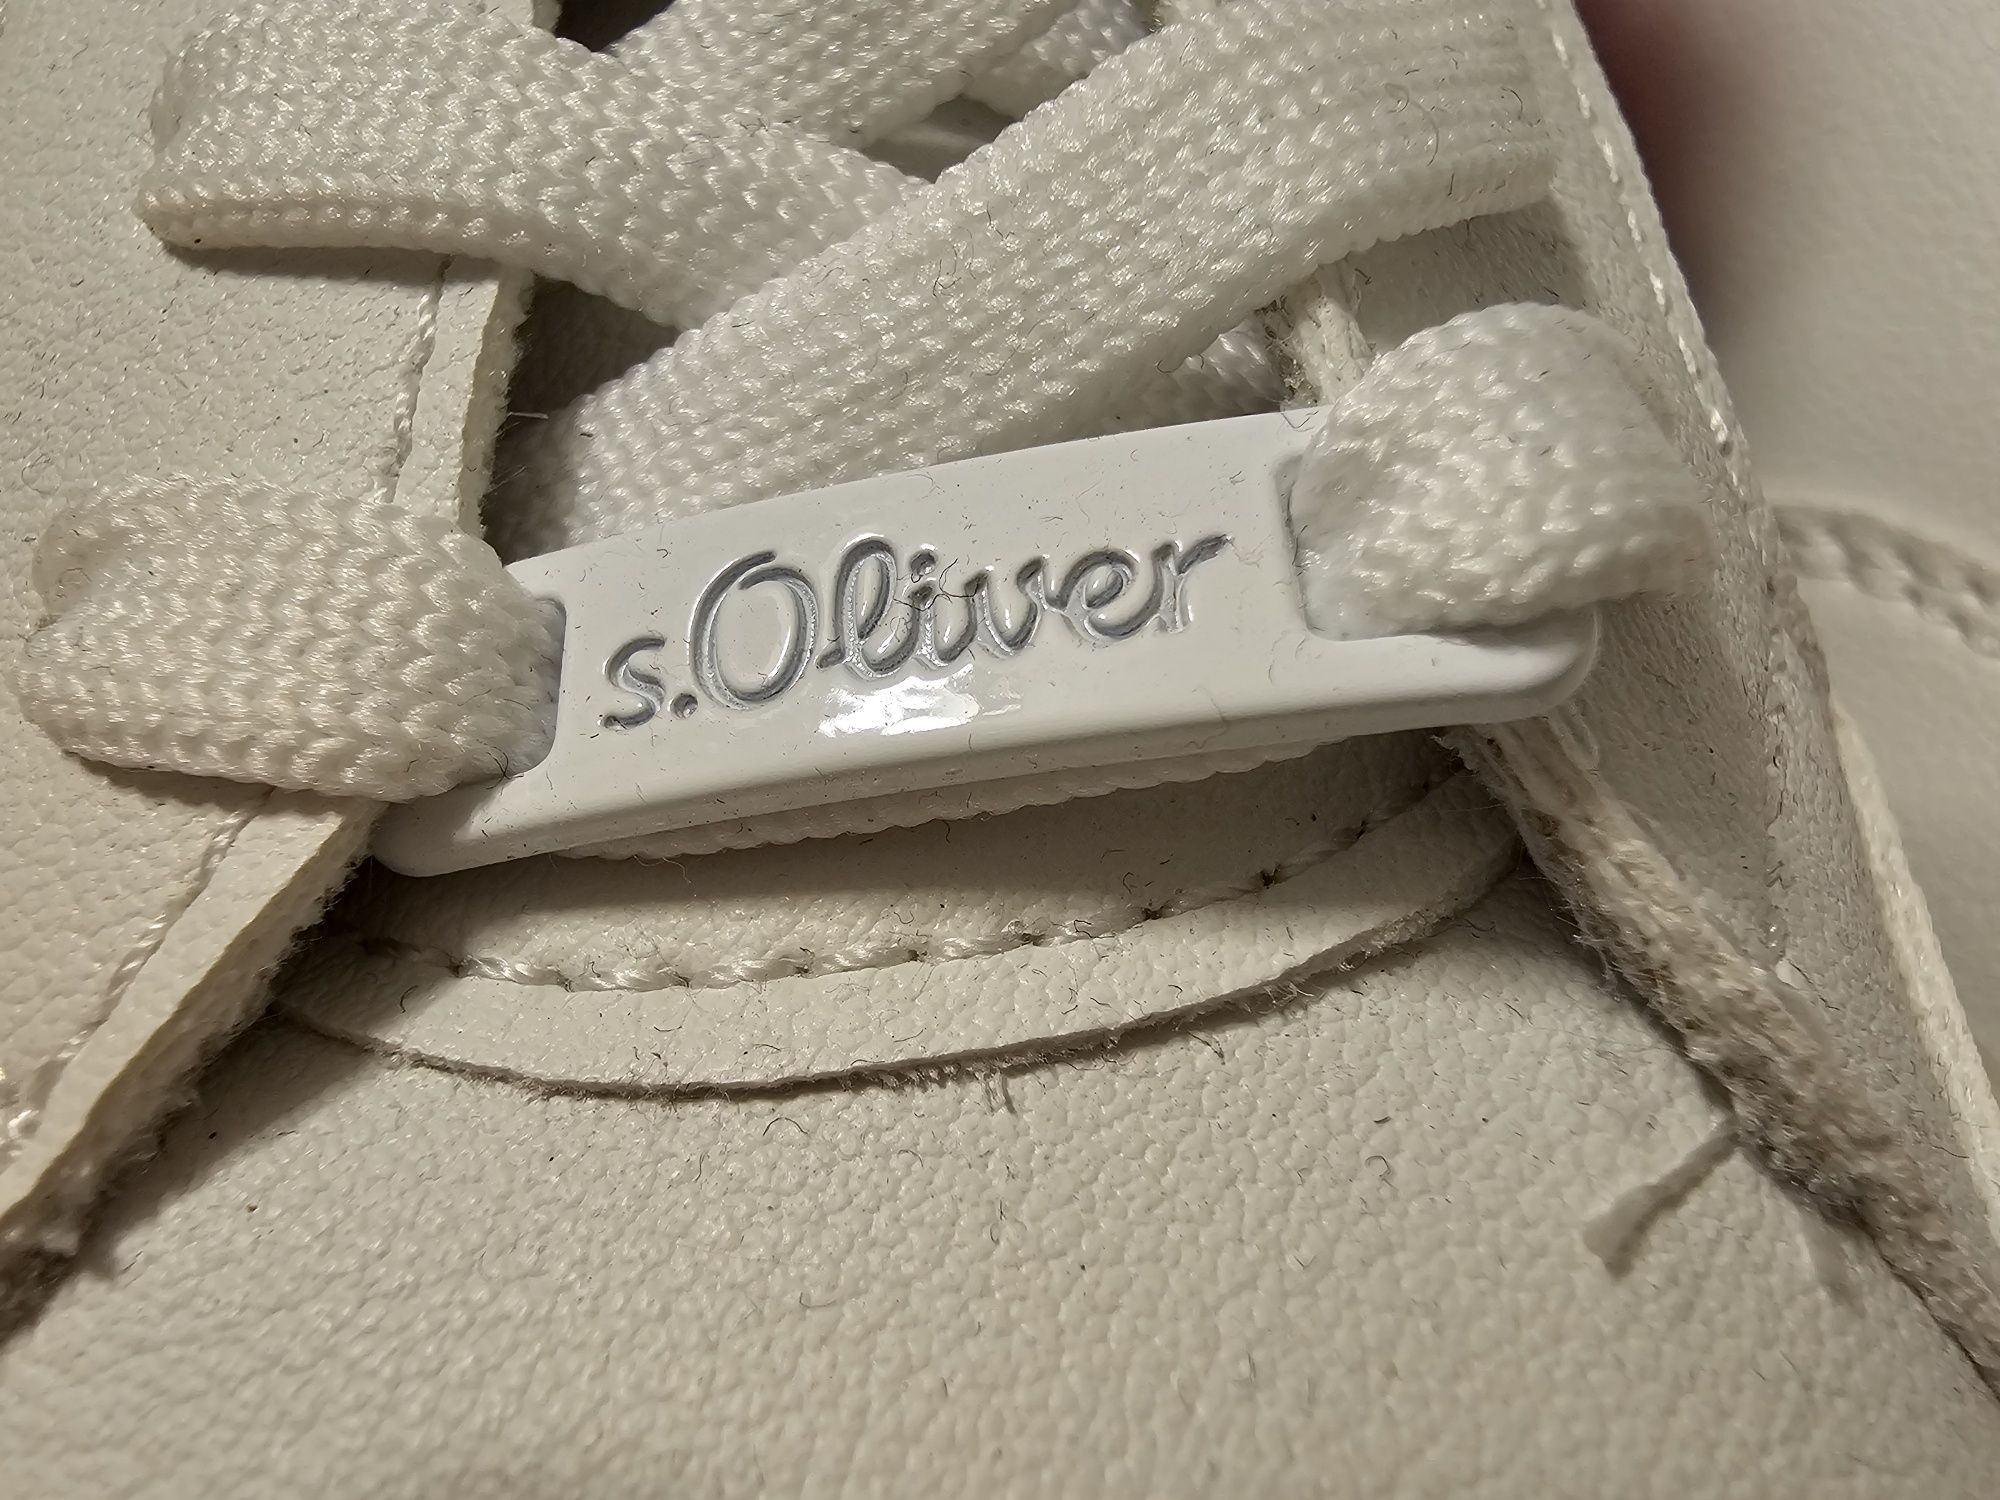 Buty damskie białe S Oliver r39 nowe